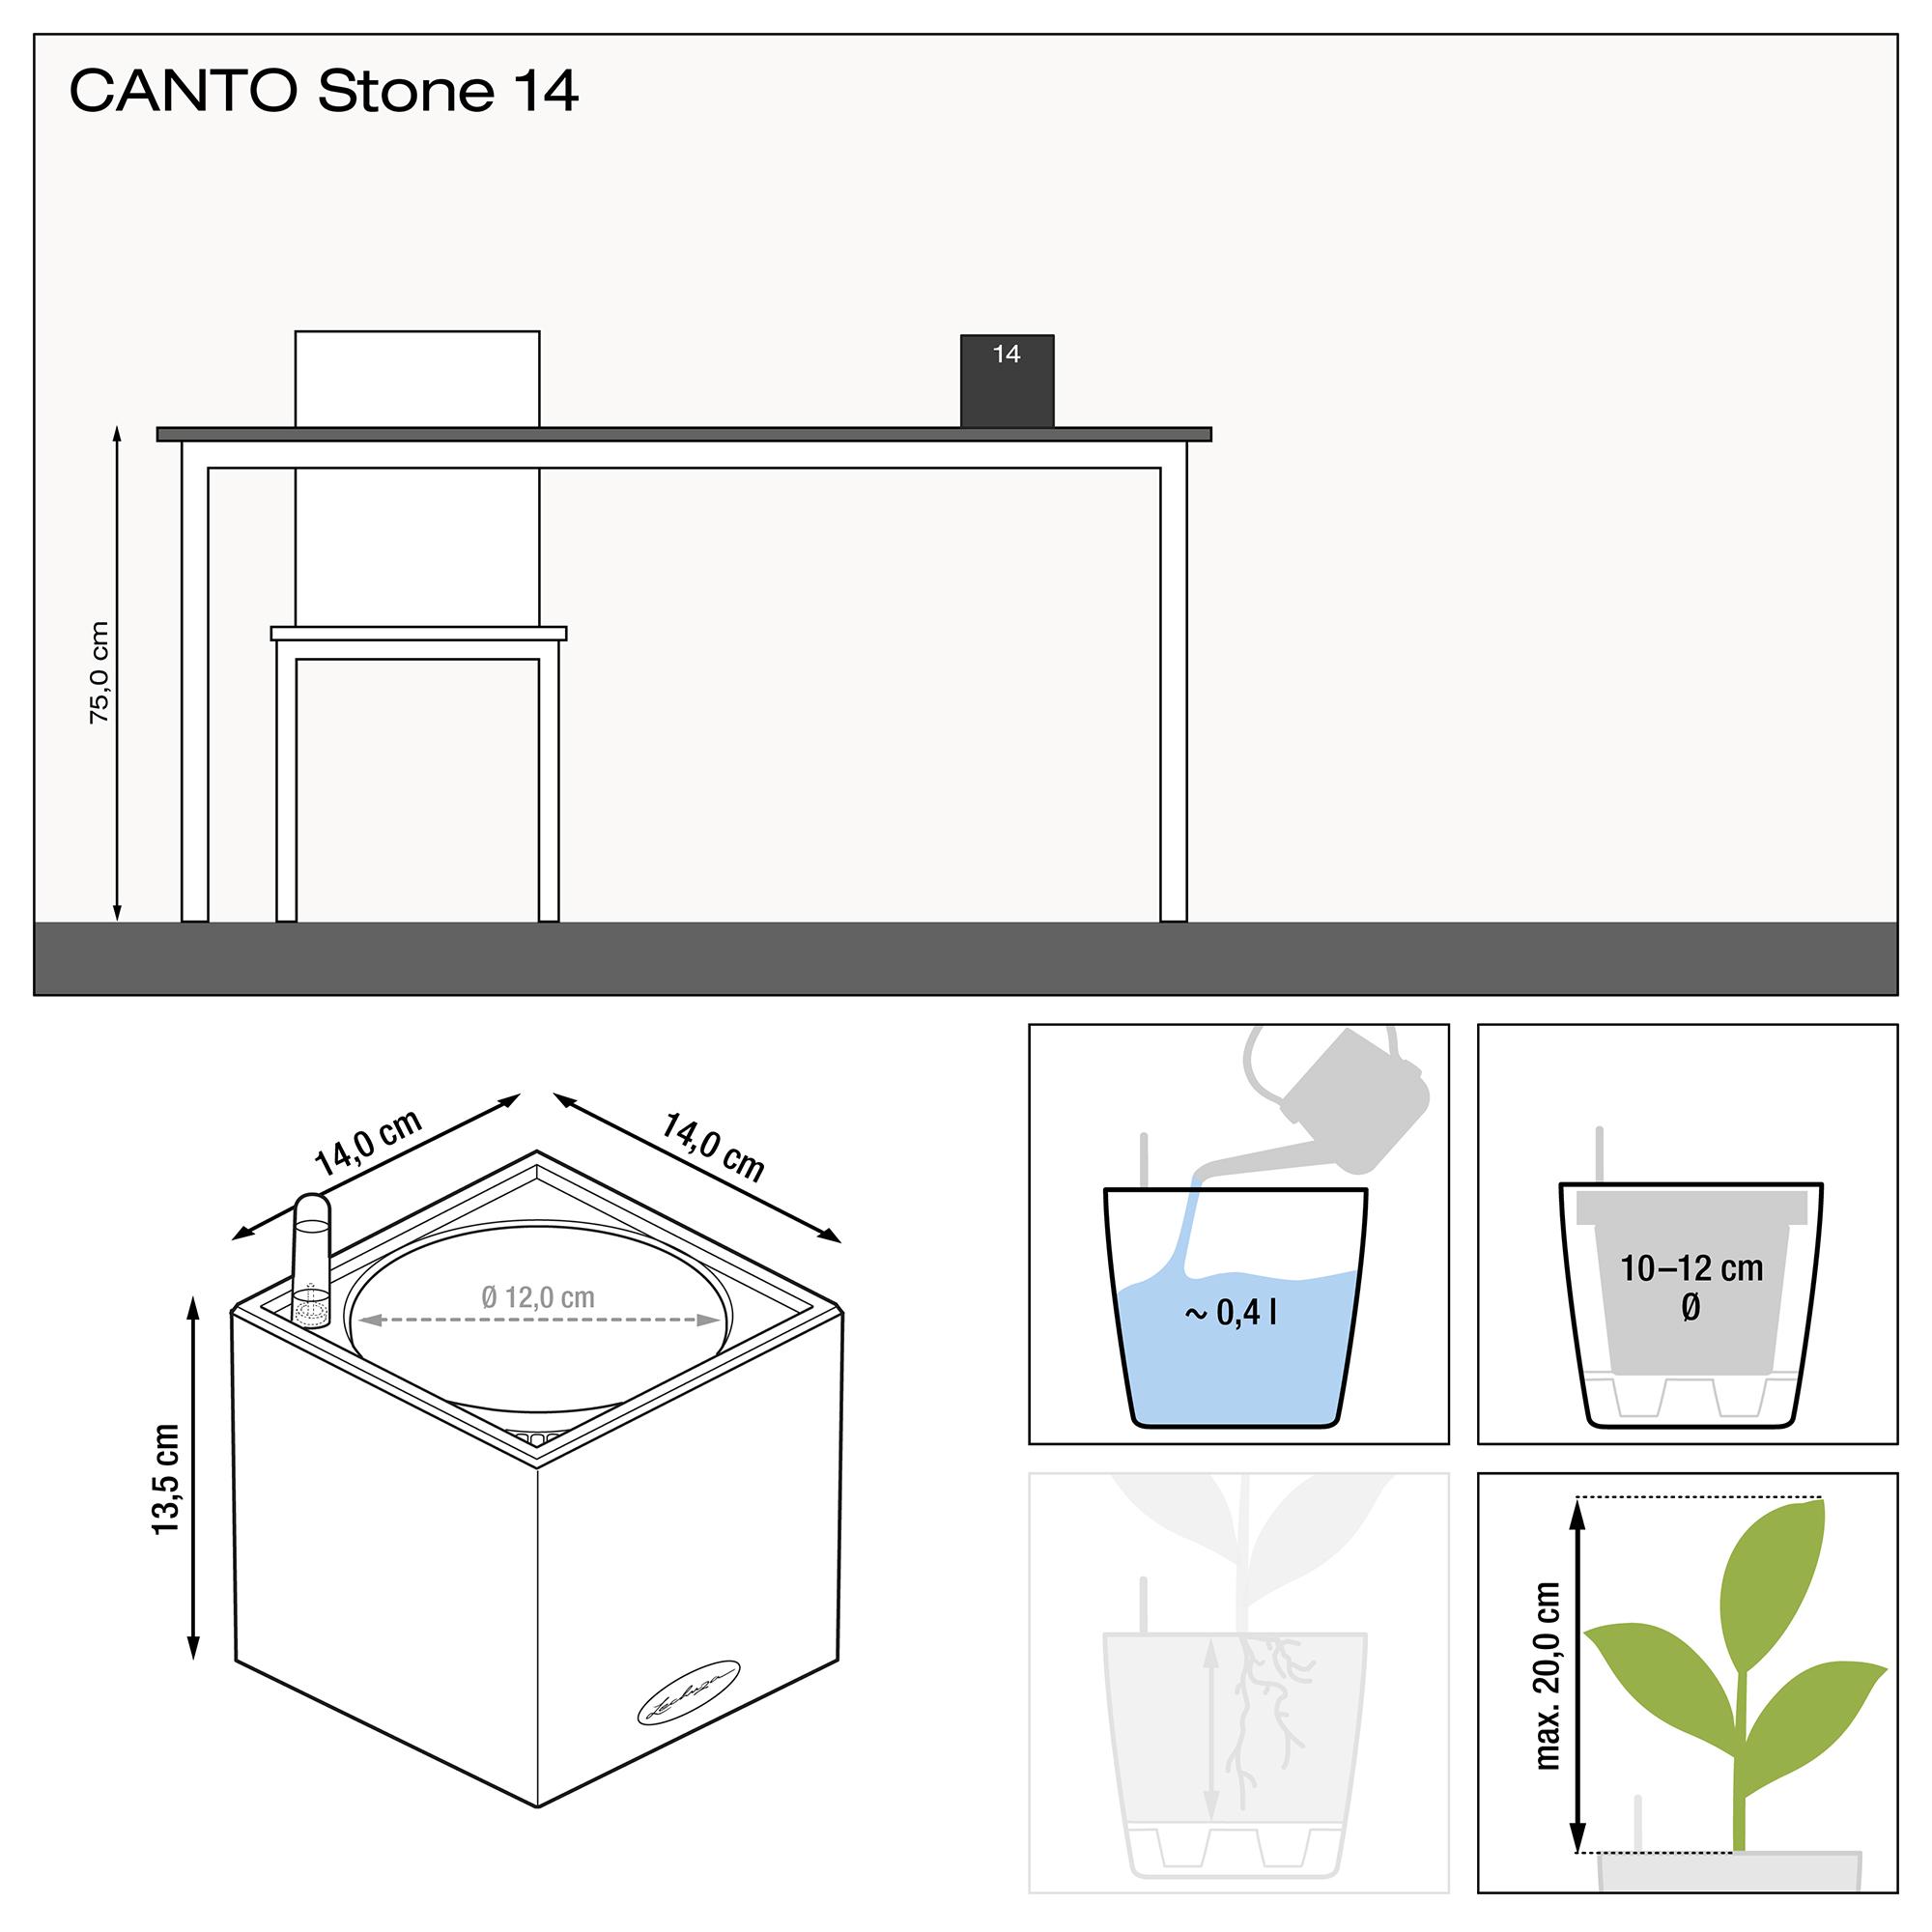 le_canto-stone-14_product_addi_nz Thumb